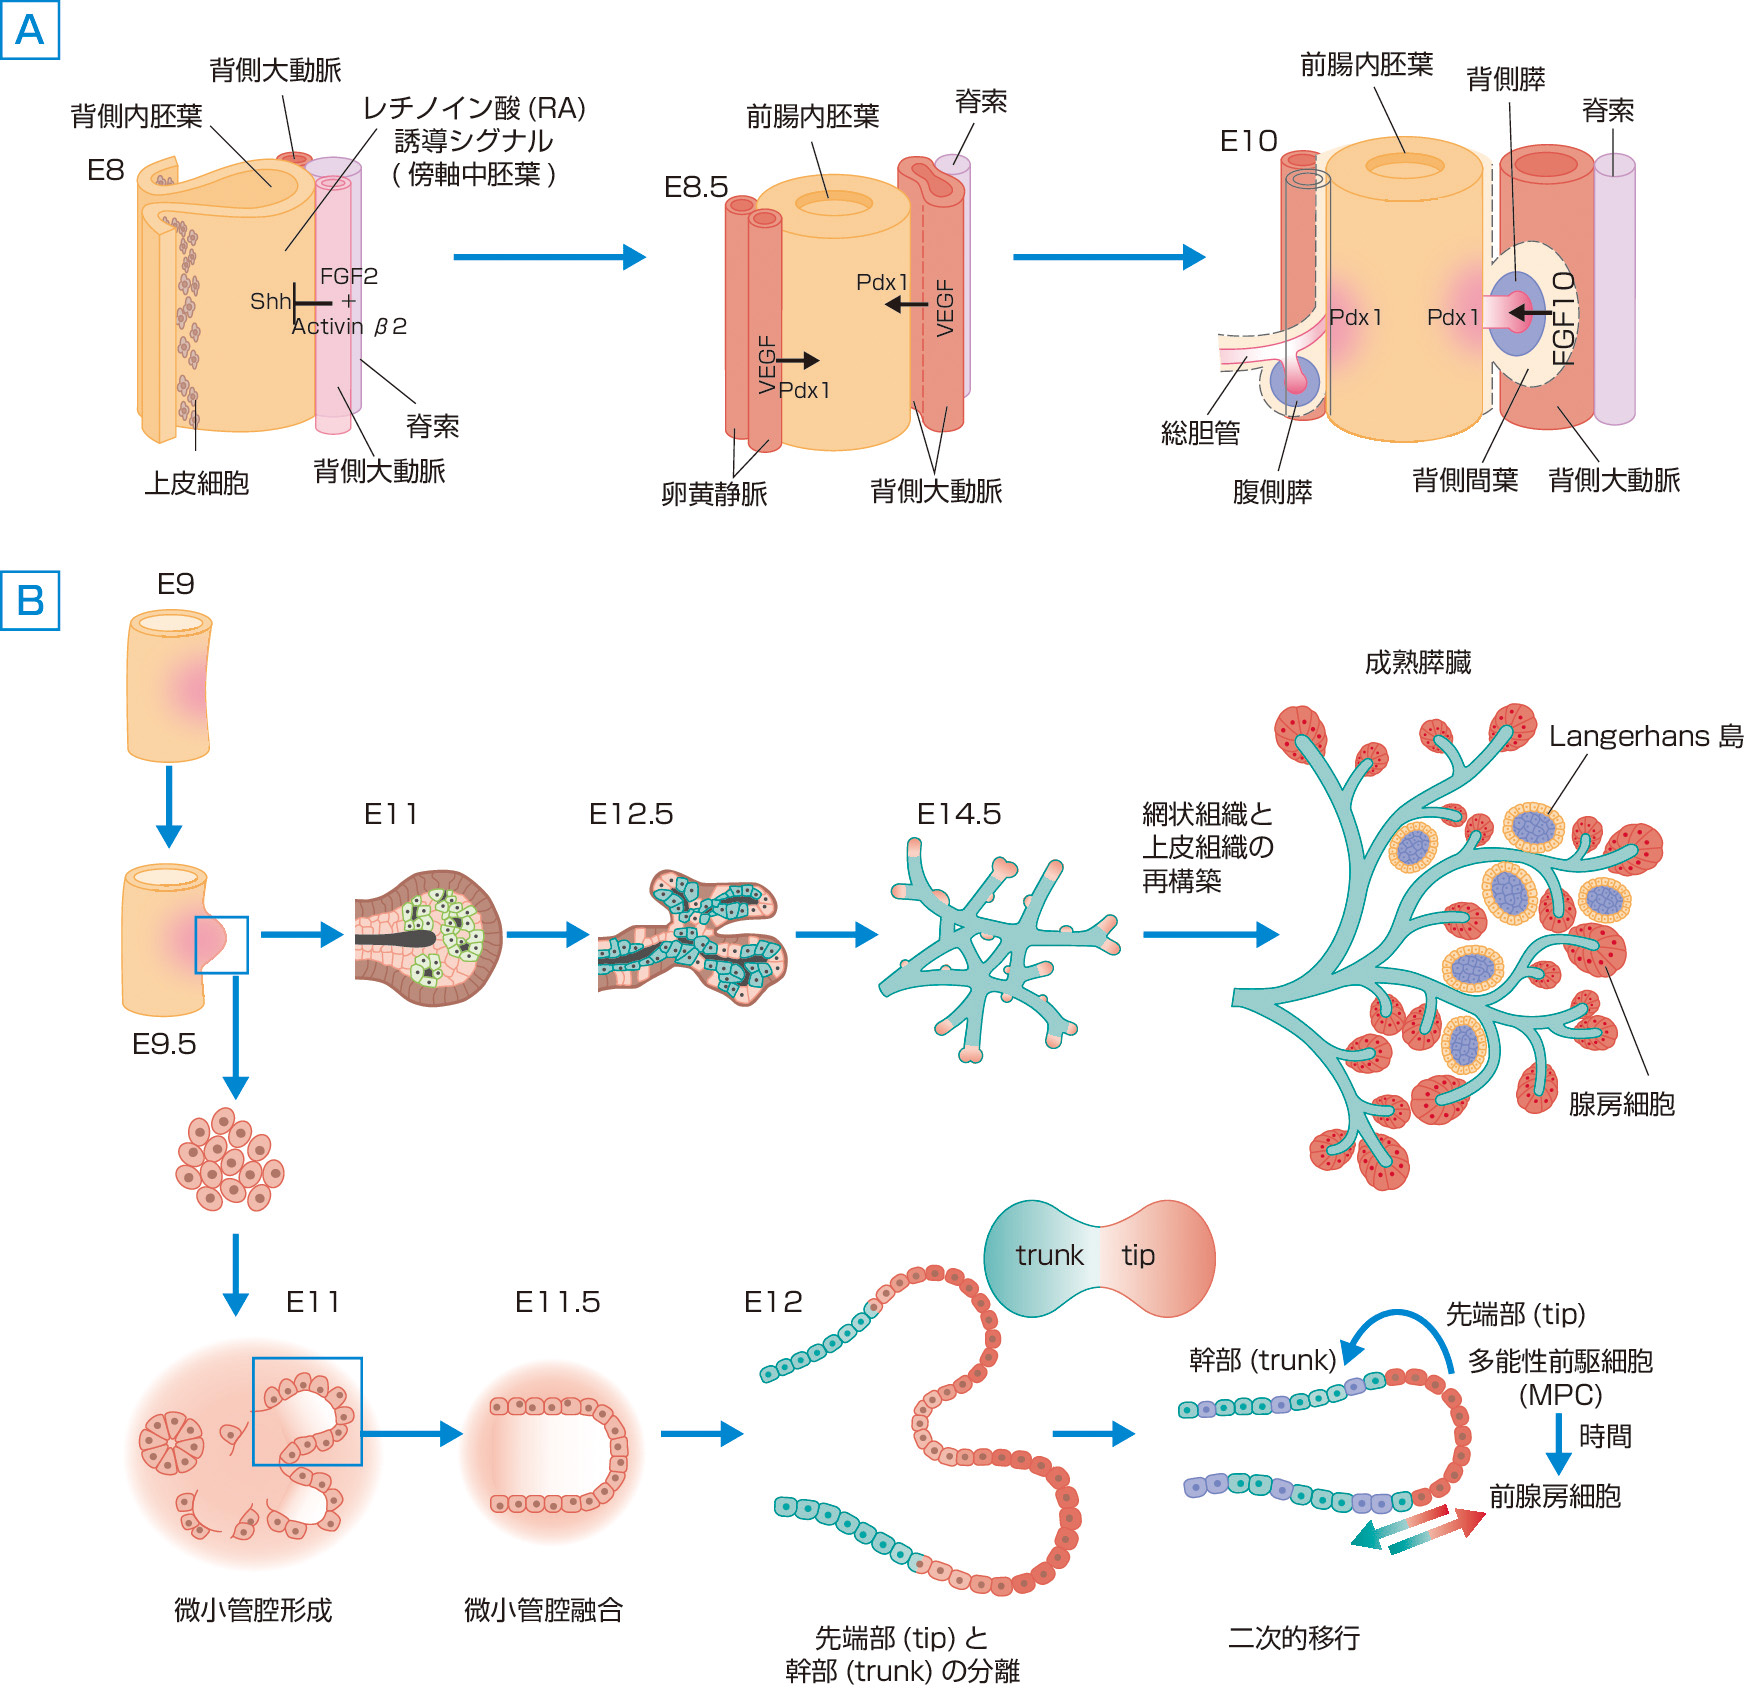 図1　マウスにおける膵臓の器官形成 (Pan FC, Wright C: Development Dynamics, 2011; 240: 530–565より作成)． A：前腸内胚葉における早期器官形成，B：背側膵における未分化内胚葉上皮からの膵組織の分化のプロセス． マウスのembryonic day (E：胎生期) とヒトのgestational day (G：妊娠期) の対応．E9.5: G26d，E10: G32d，E11.5: G6W, E14.5: G12～13W．